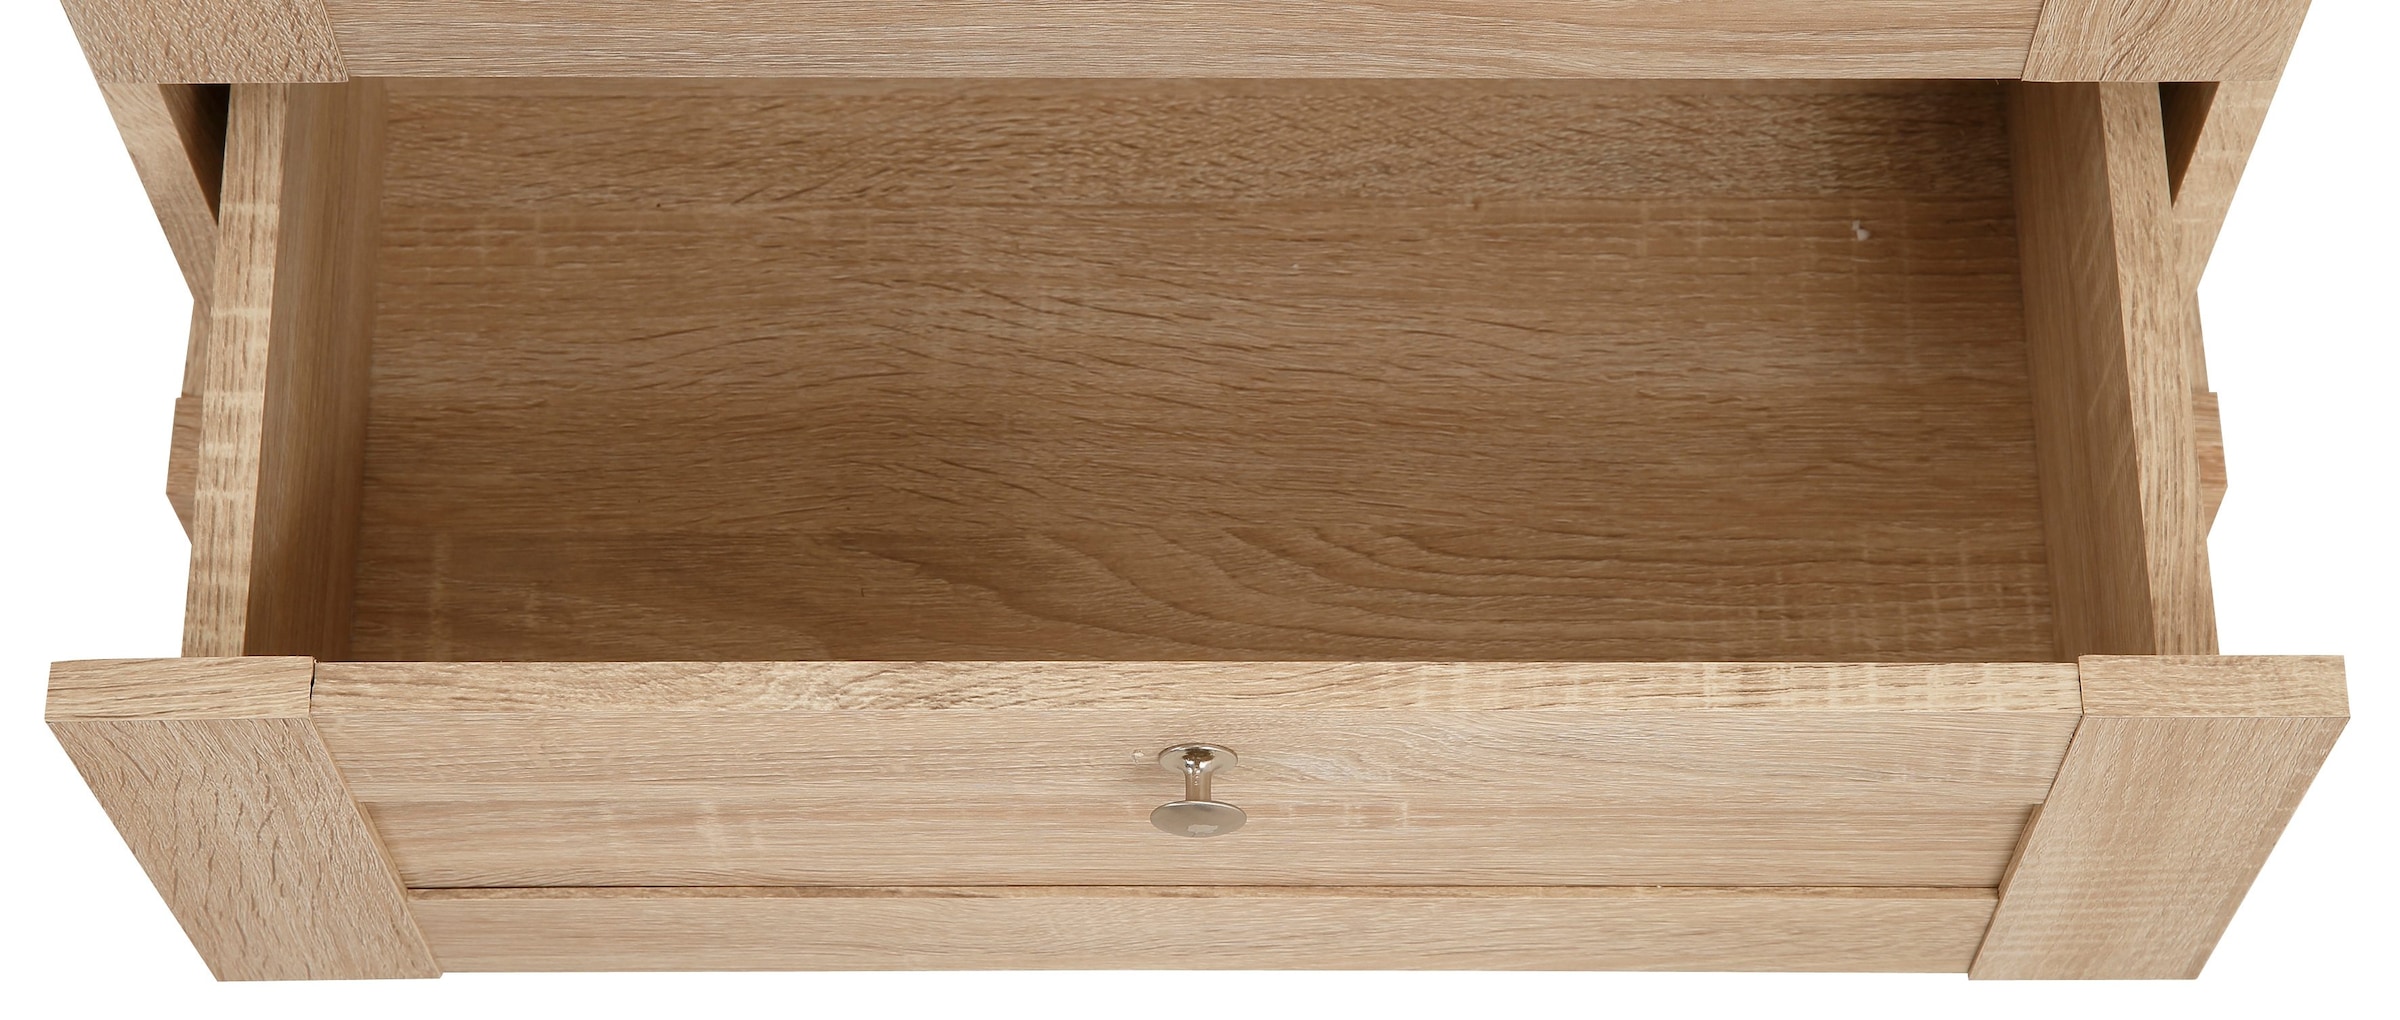 Home affaire Garderobenschrank »Binz«, mit schöner Holzoptik, mit vielen Stauraummöglichkeiten, Höhe 180 cm